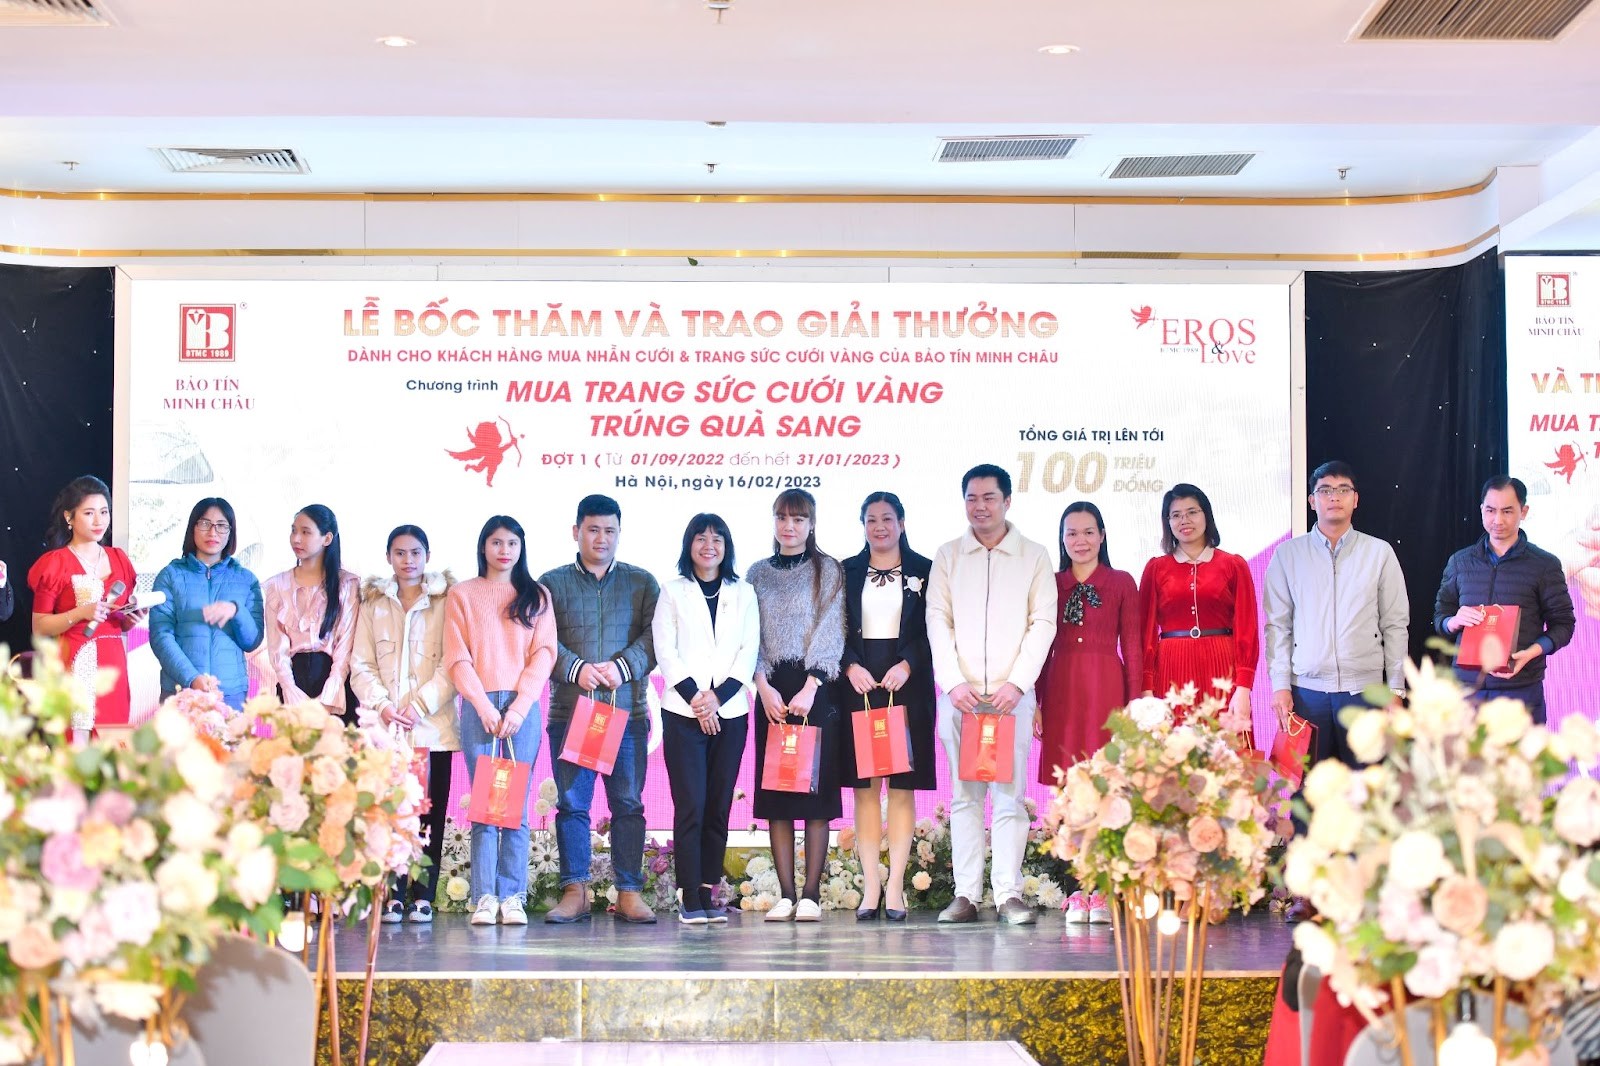 Bảo Tín Minh Châu tổ chức bốc thăm, trao thưởng cho khách hàng mùa cưới đợt 1 (2022-2023) - 1